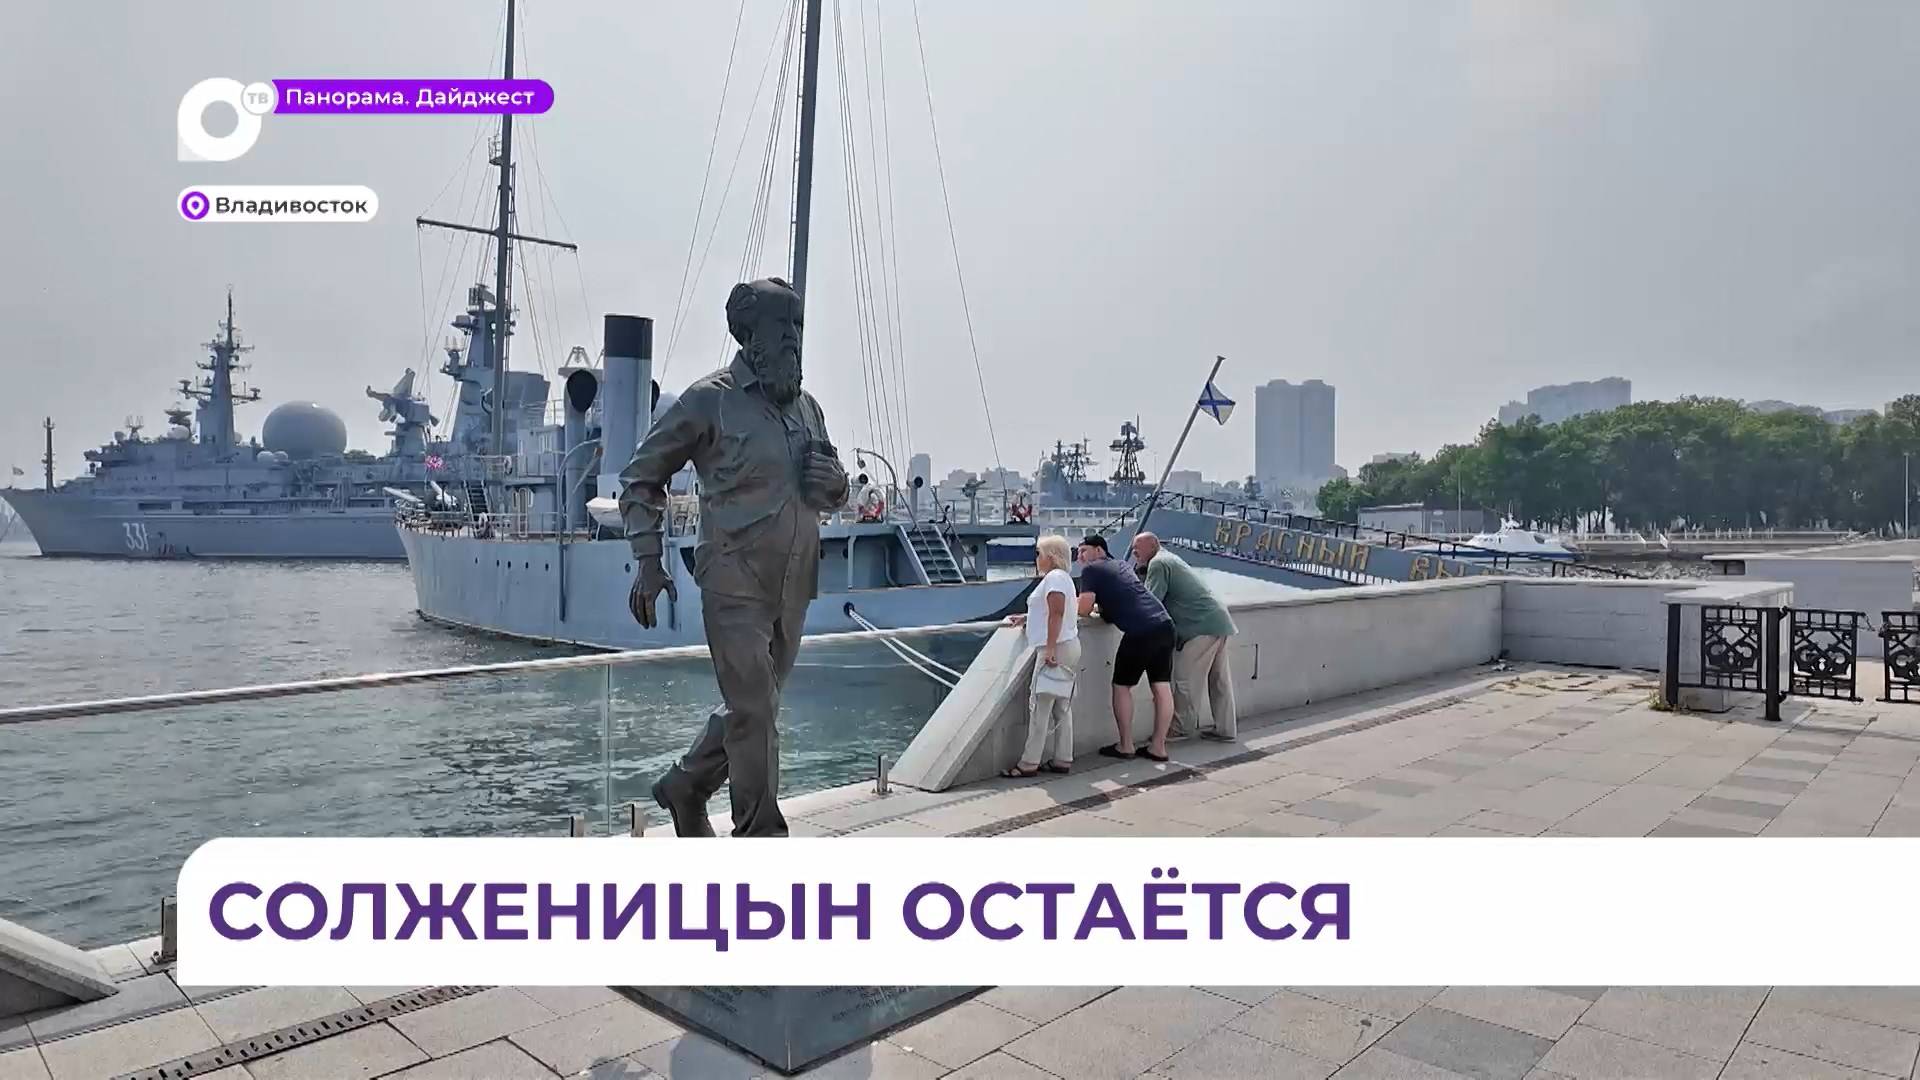 Суд признал законной установку памятника Солженицыну на причале во Владивостоке